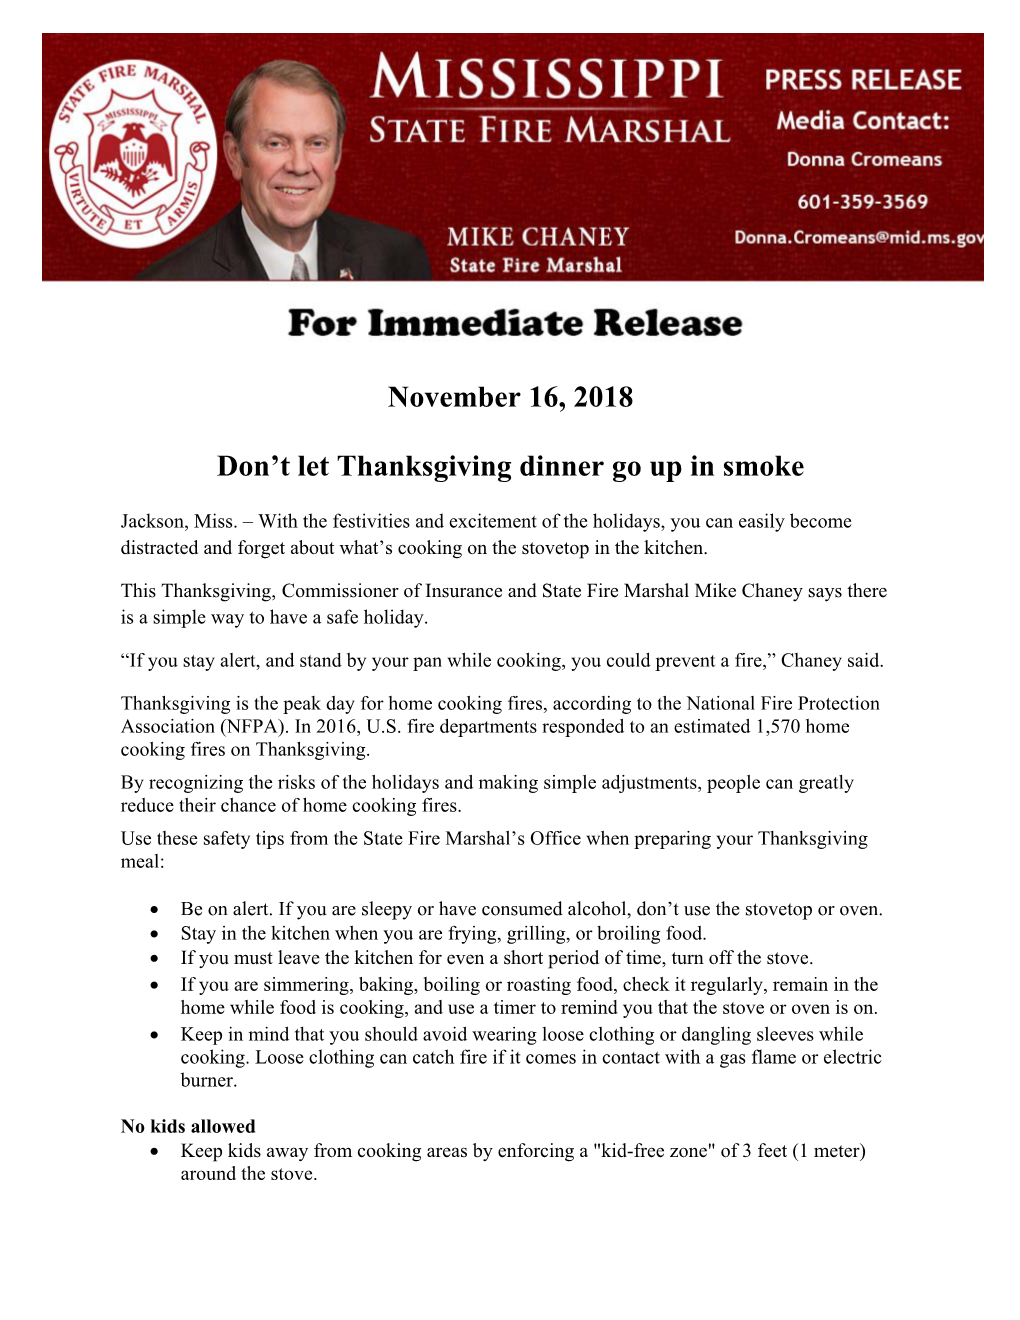 November 16, 2018 Don't Let Thanksgiving Dinner Go up in Smoke